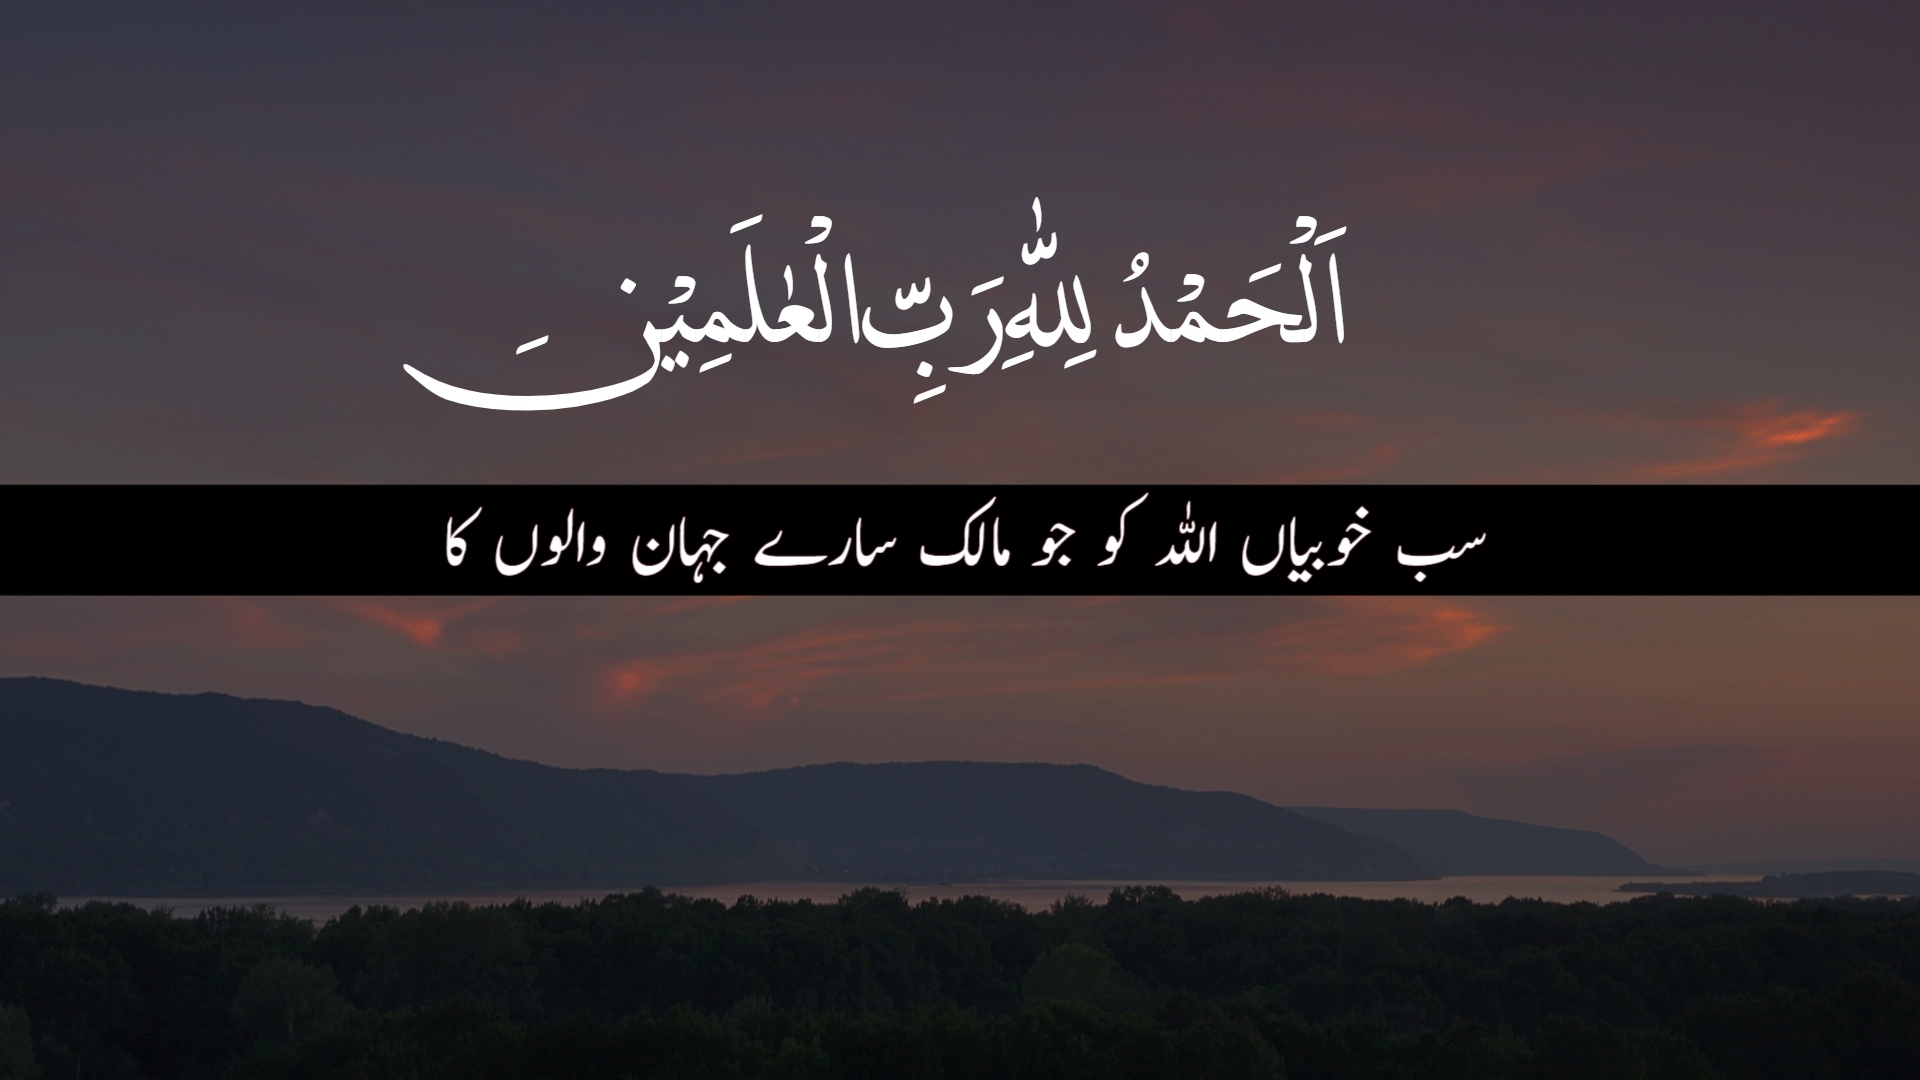 Quran Quotes in Urdu Translation